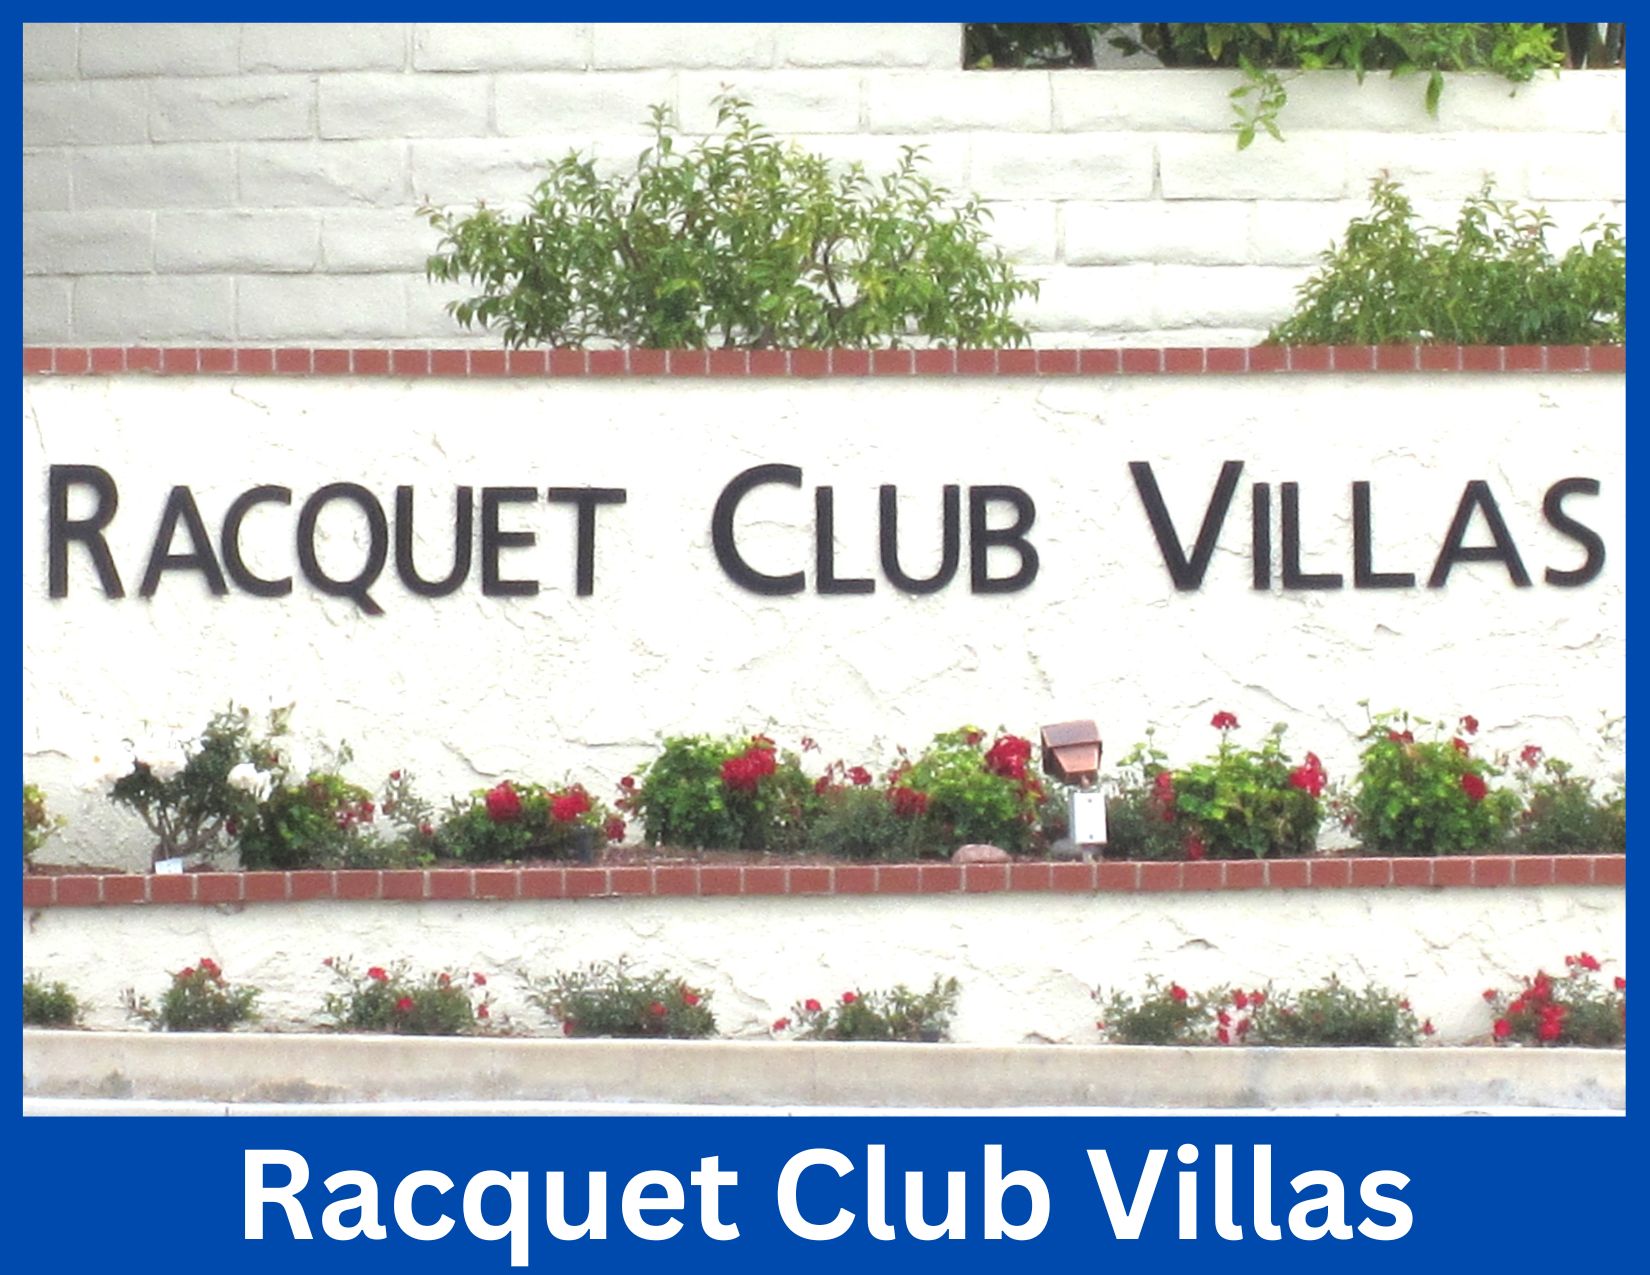 Racquet Club Villas, Thousand Oaks